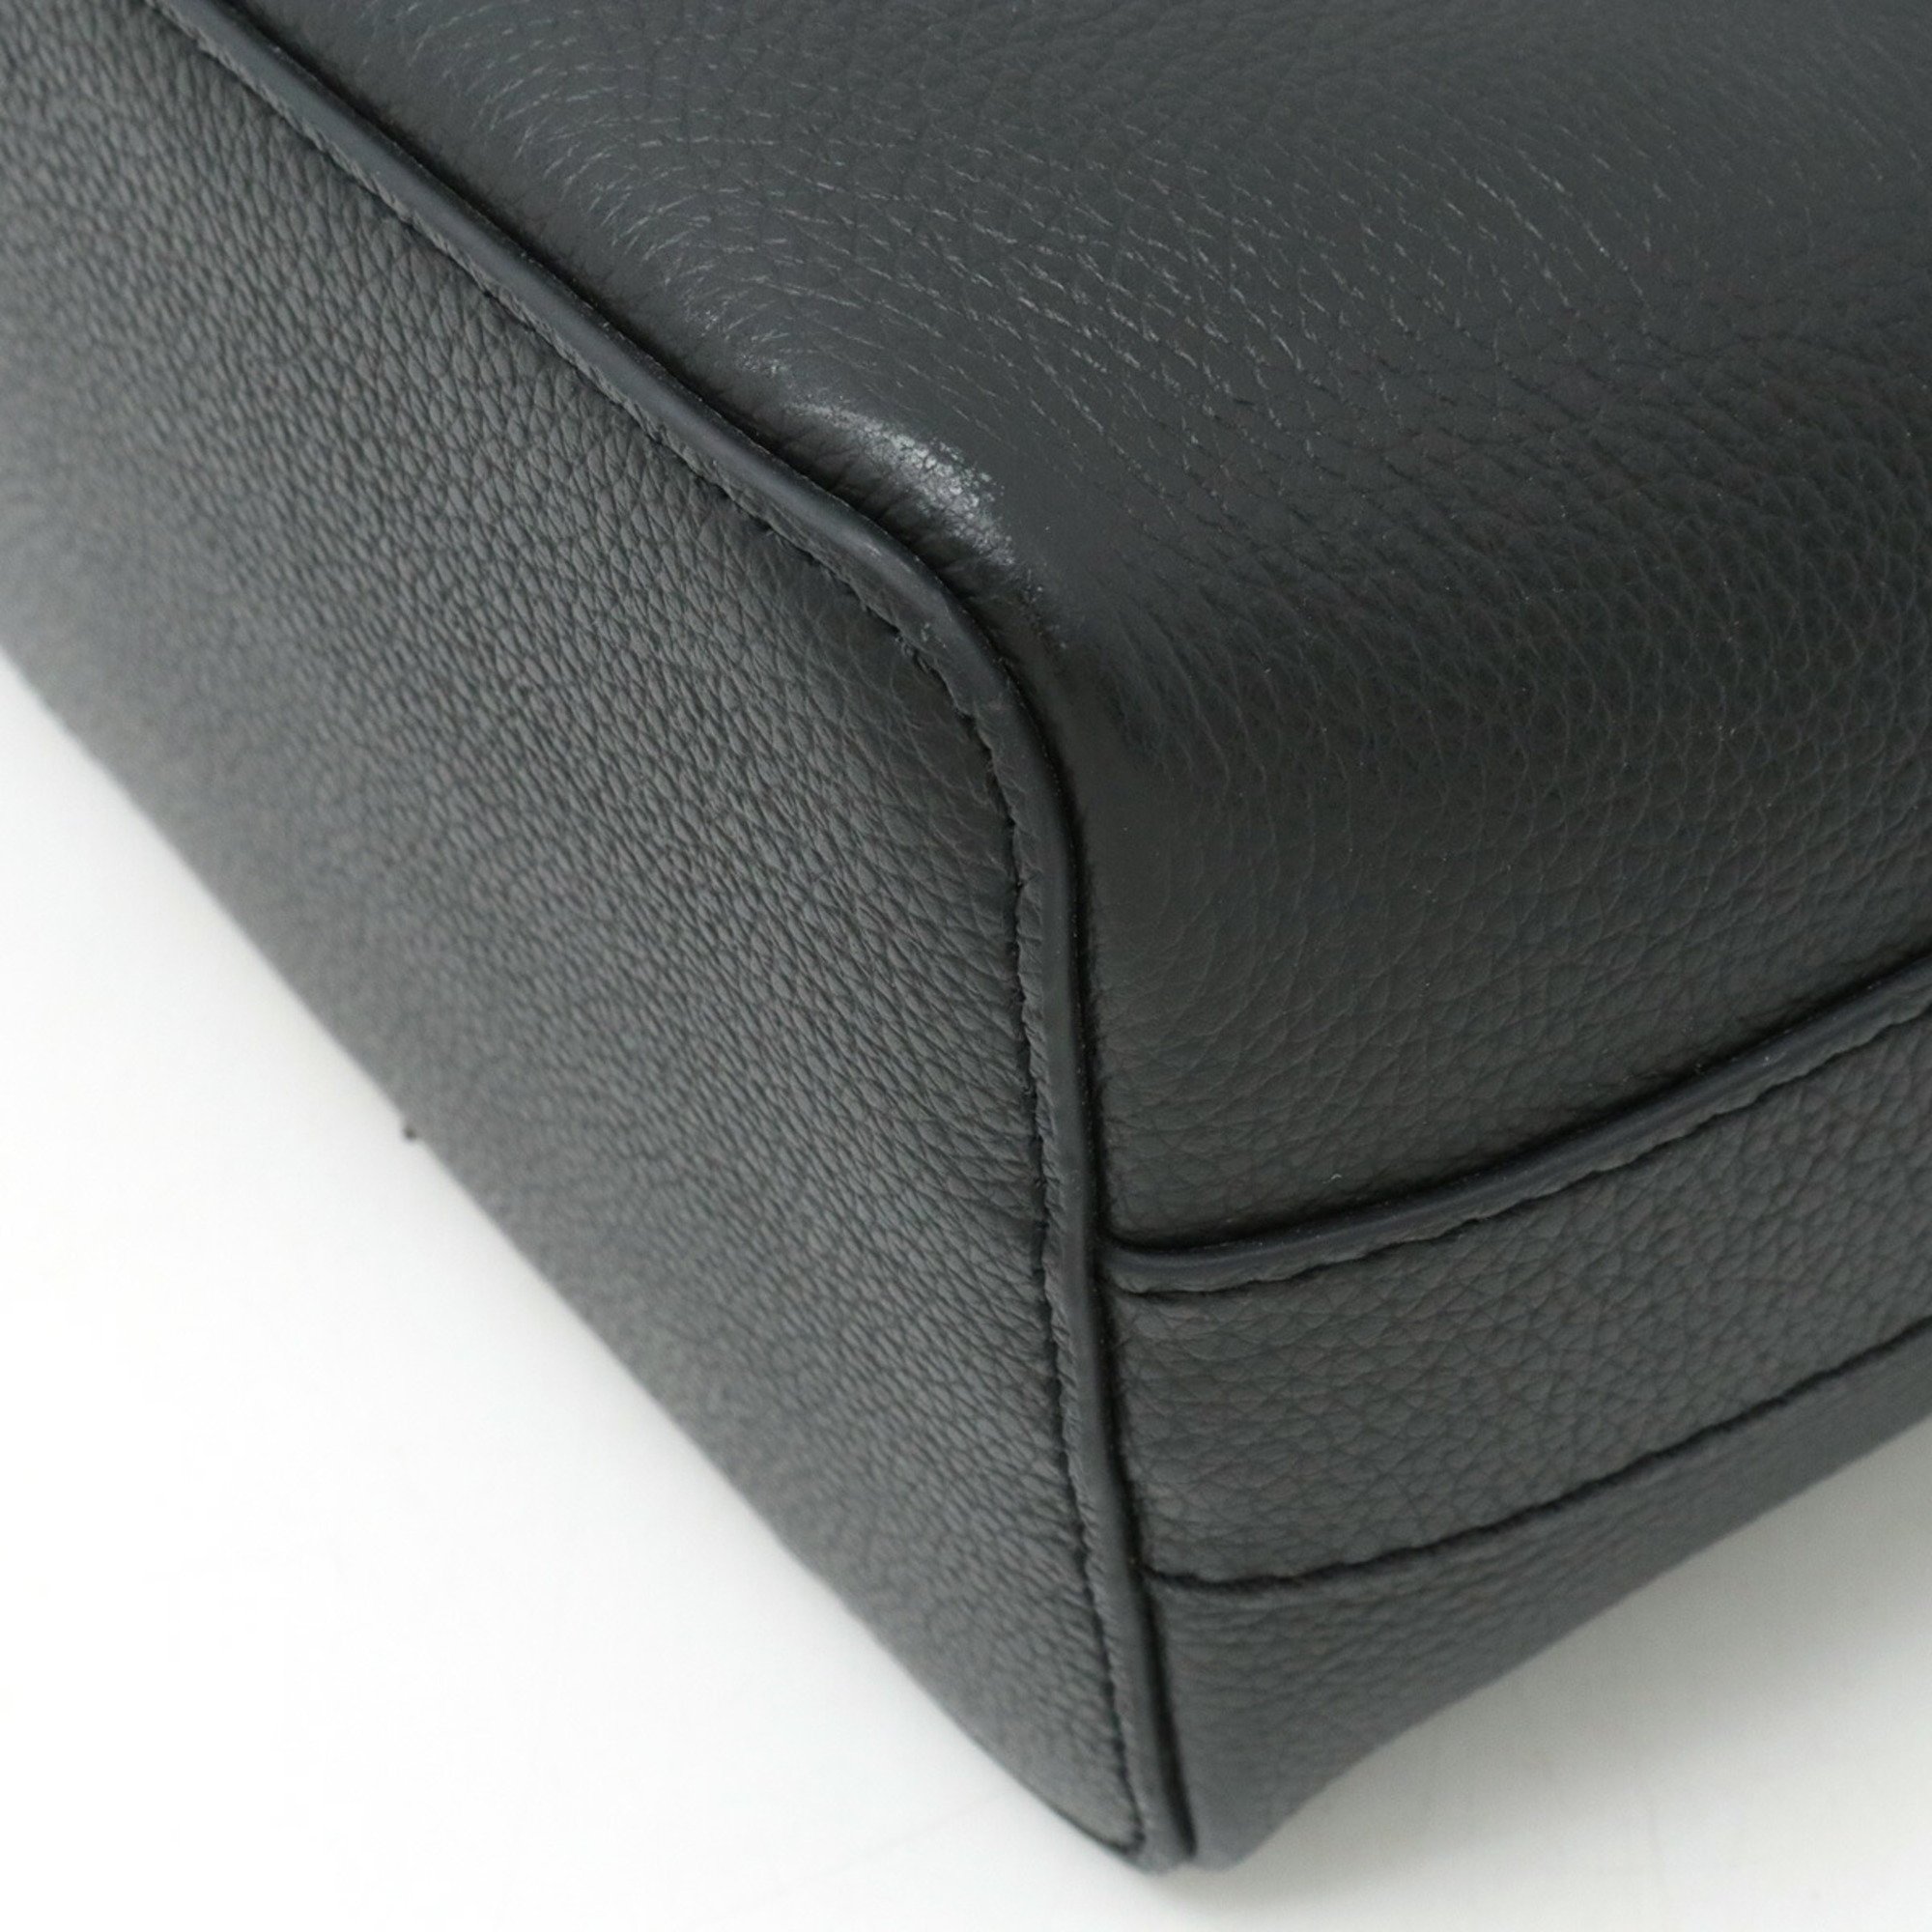 FURLA Costanza handbag shoulder bag in leather, black